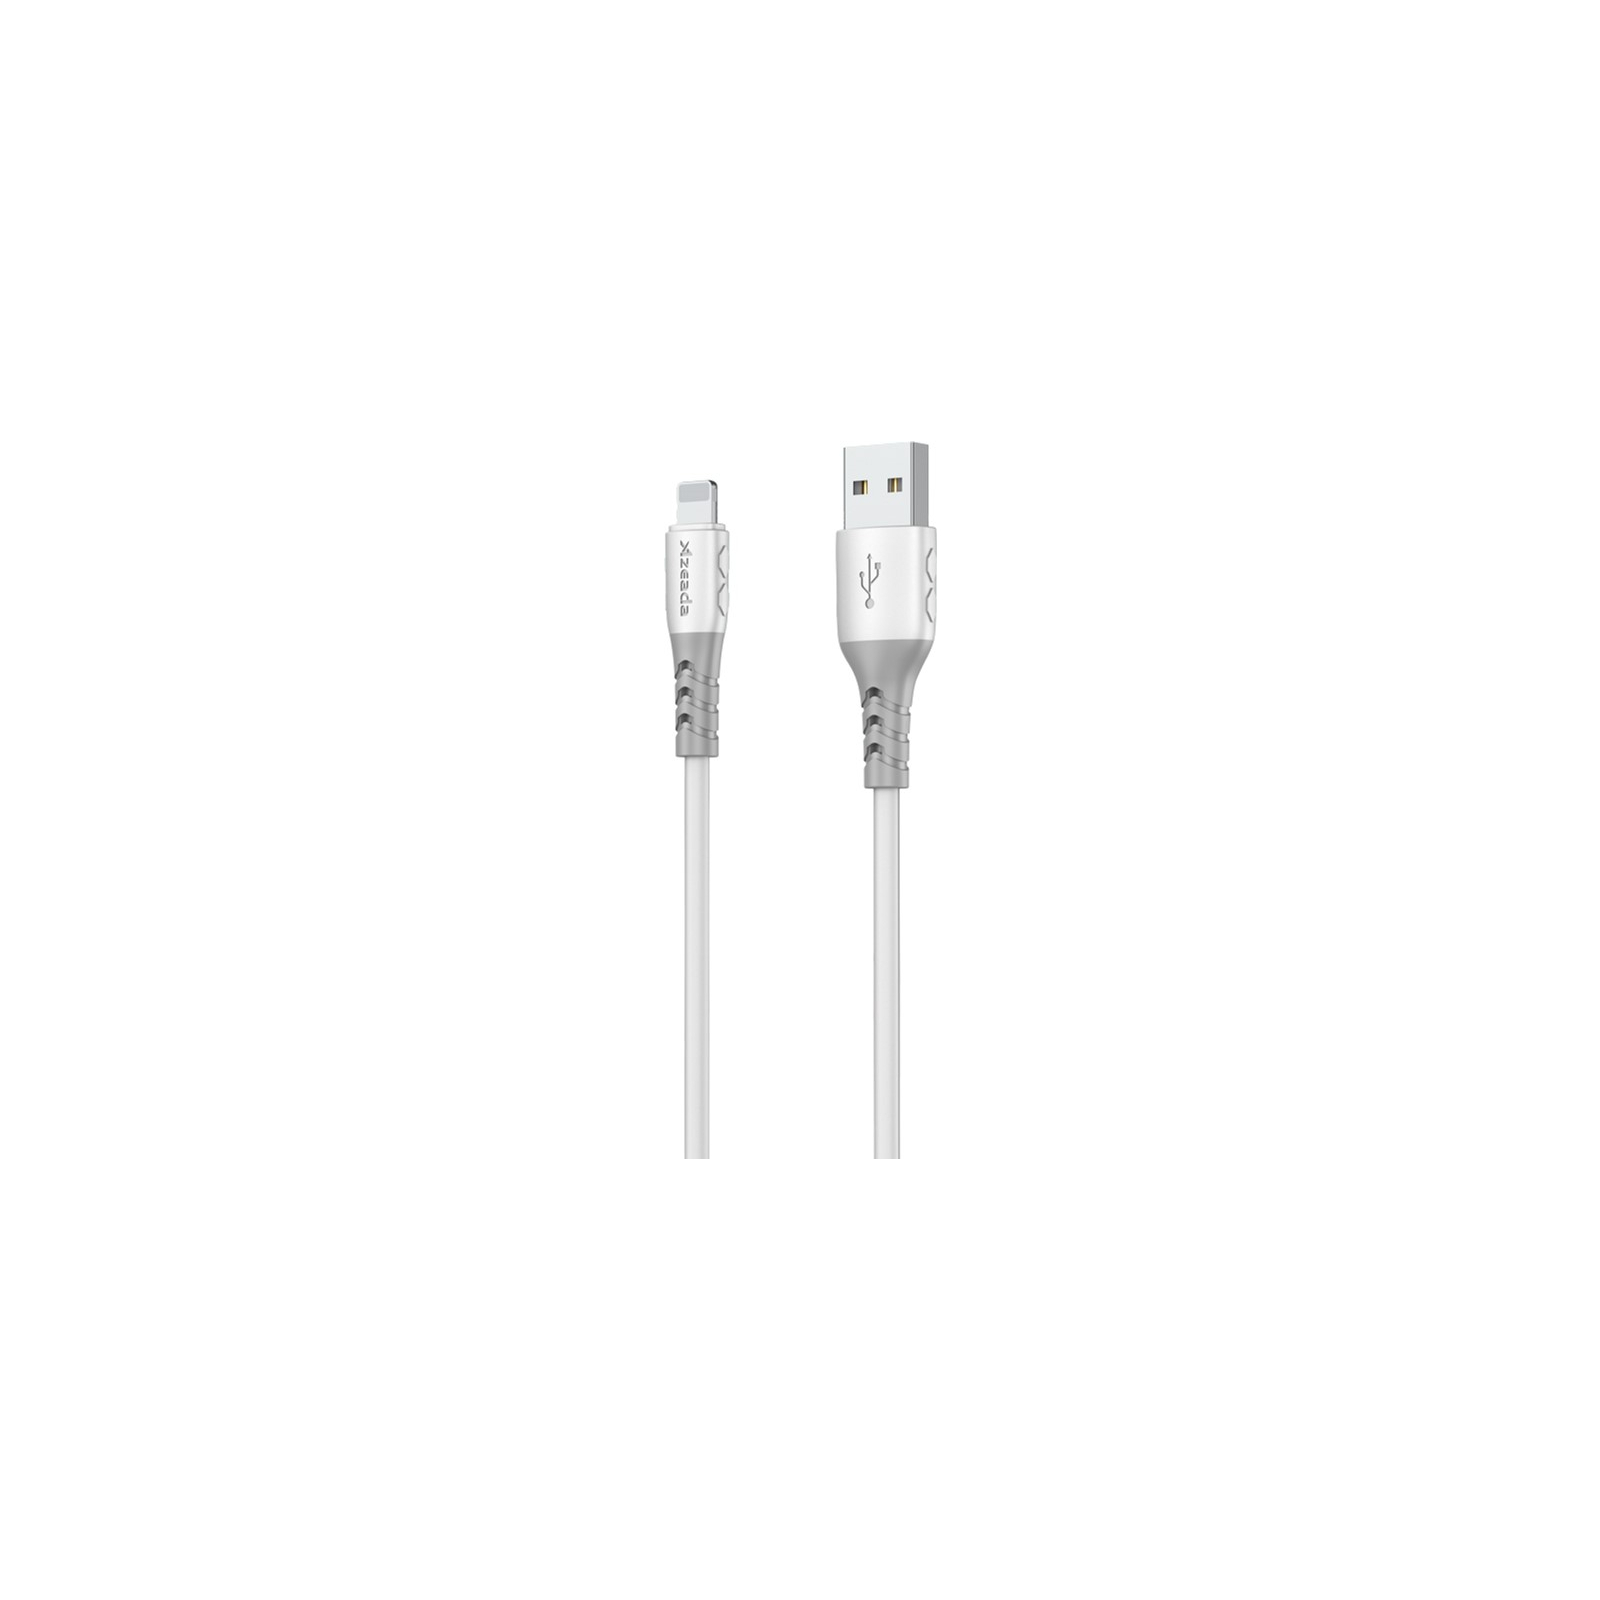 Дата кабель USB 2.0 AM to Lightning 1.0m PD-B51i White Proda (PD-B51i-WH) изображение 2